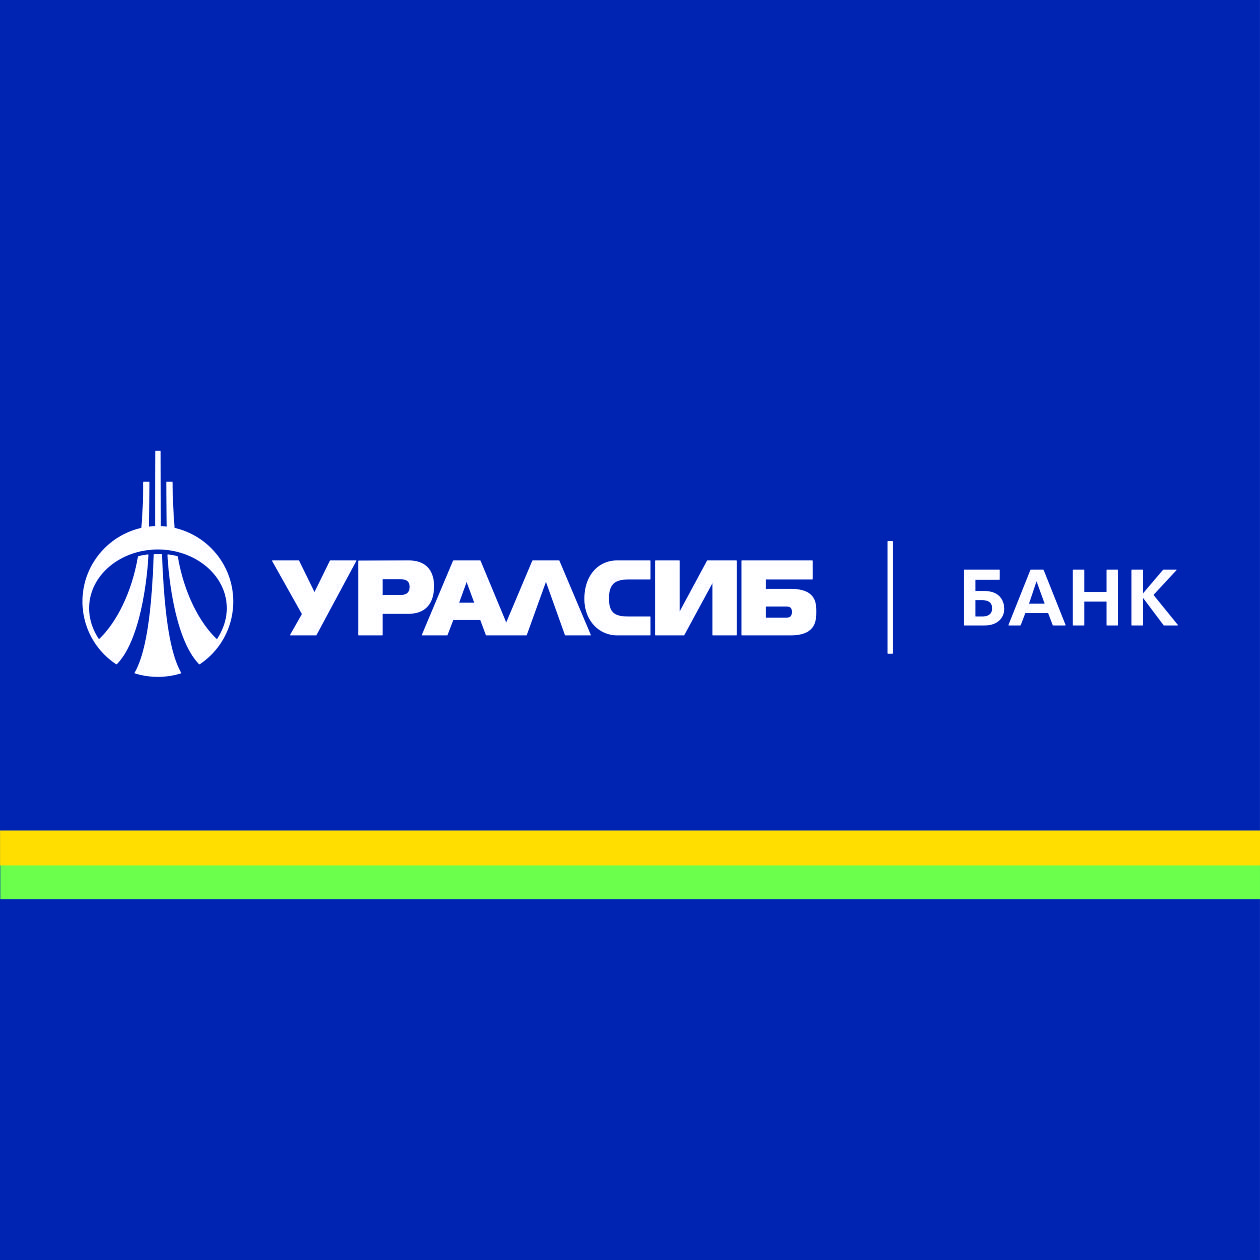 Банк УРАЛСИБ запустил программу автокредитования  «Коммерческий транспорт»